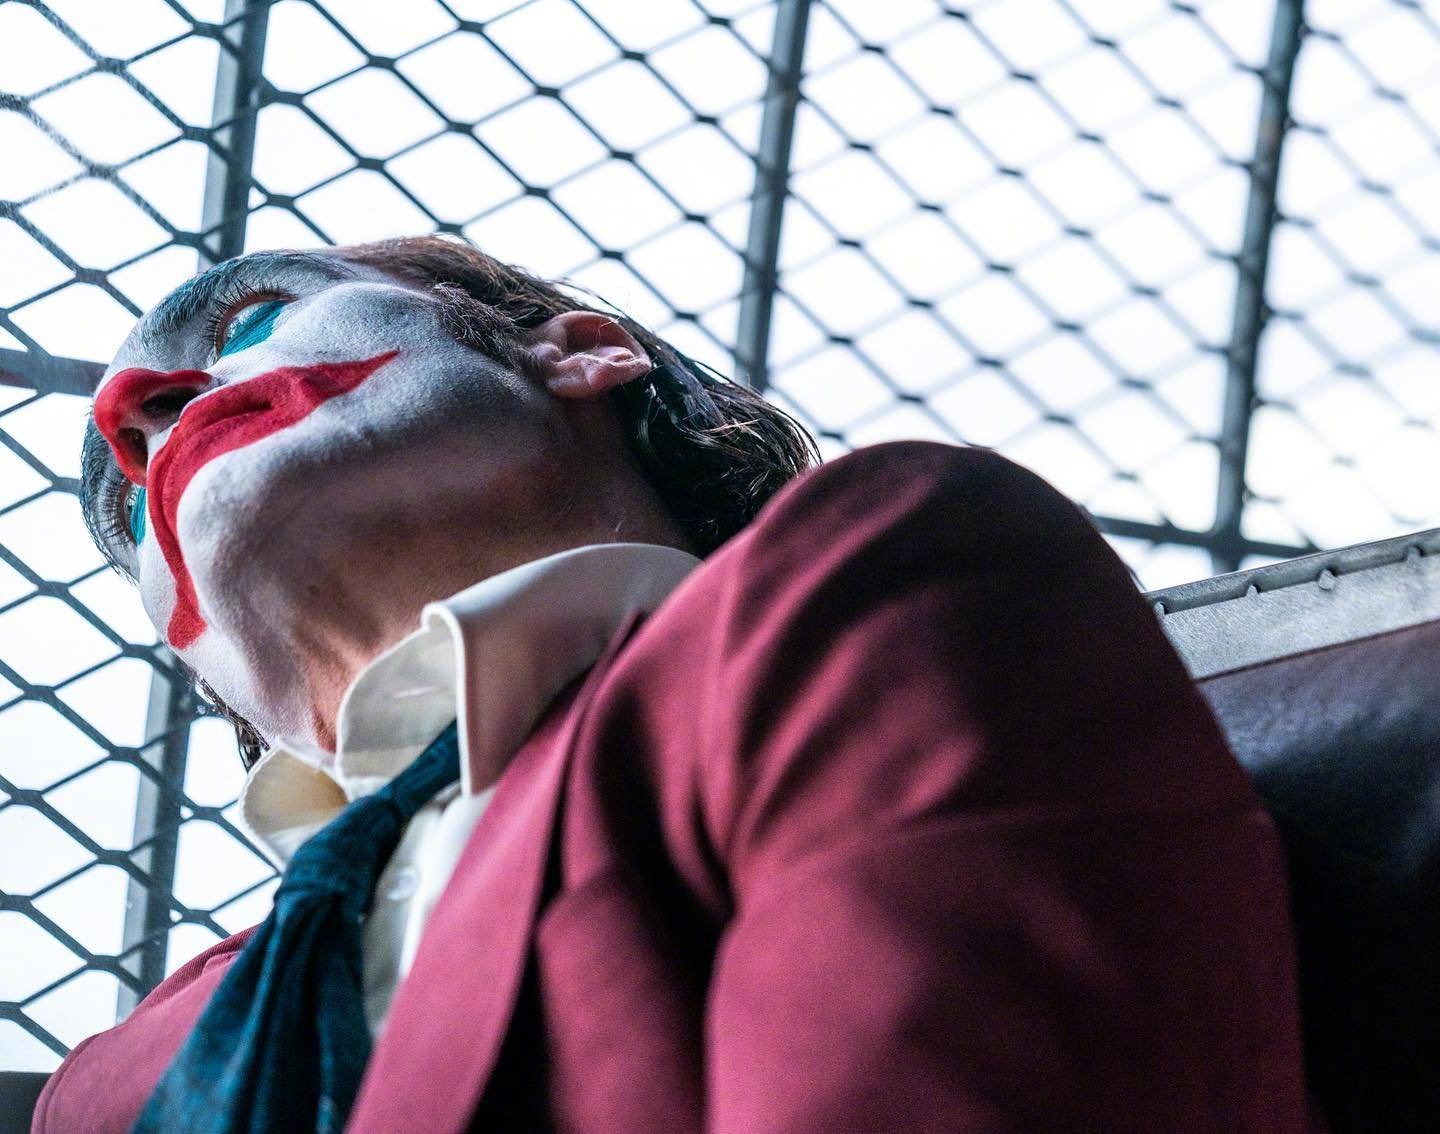 今日dc新片《小丑2:二联性精神病》宣布杀青,由华金·菲尼克斯出演